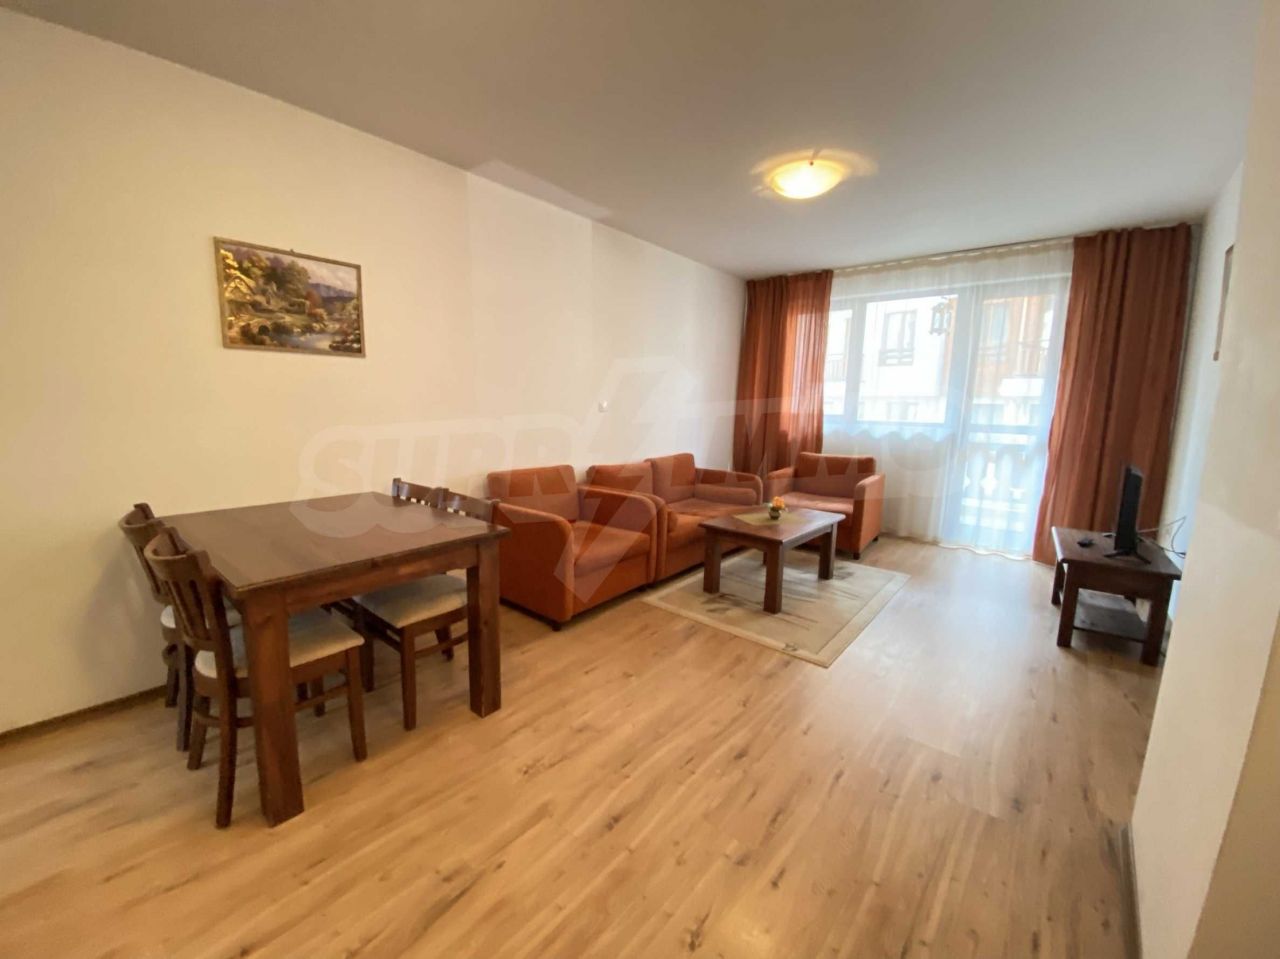 Apartment in Bansko, Bulgaria, 62.96 sq.m - picture 1